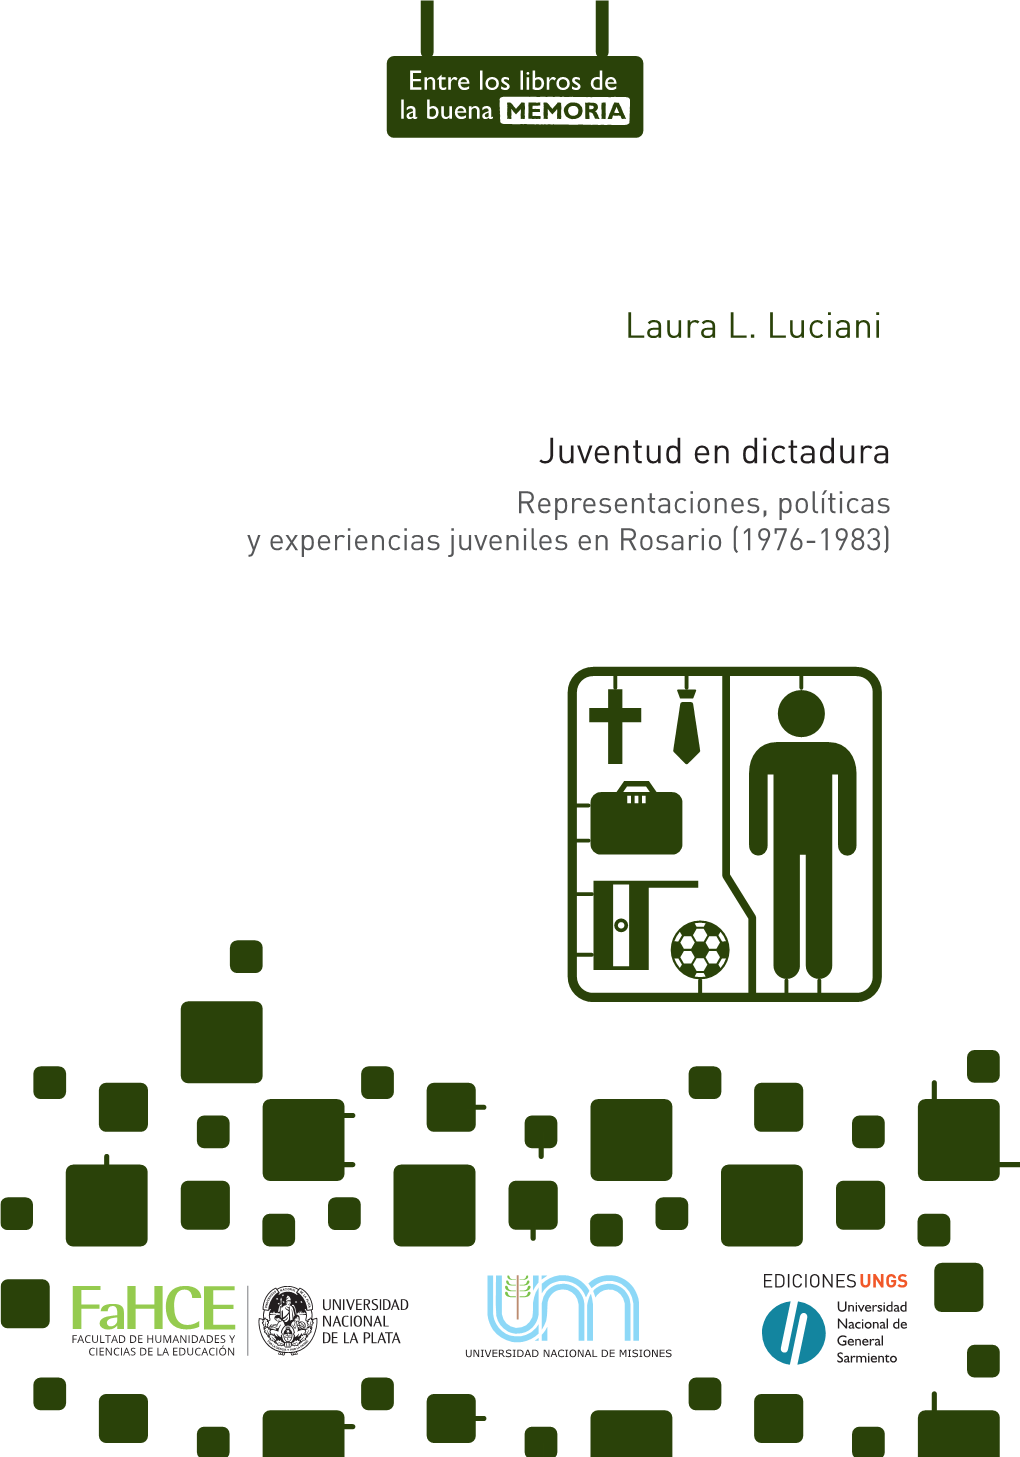 Laura L. Luciani